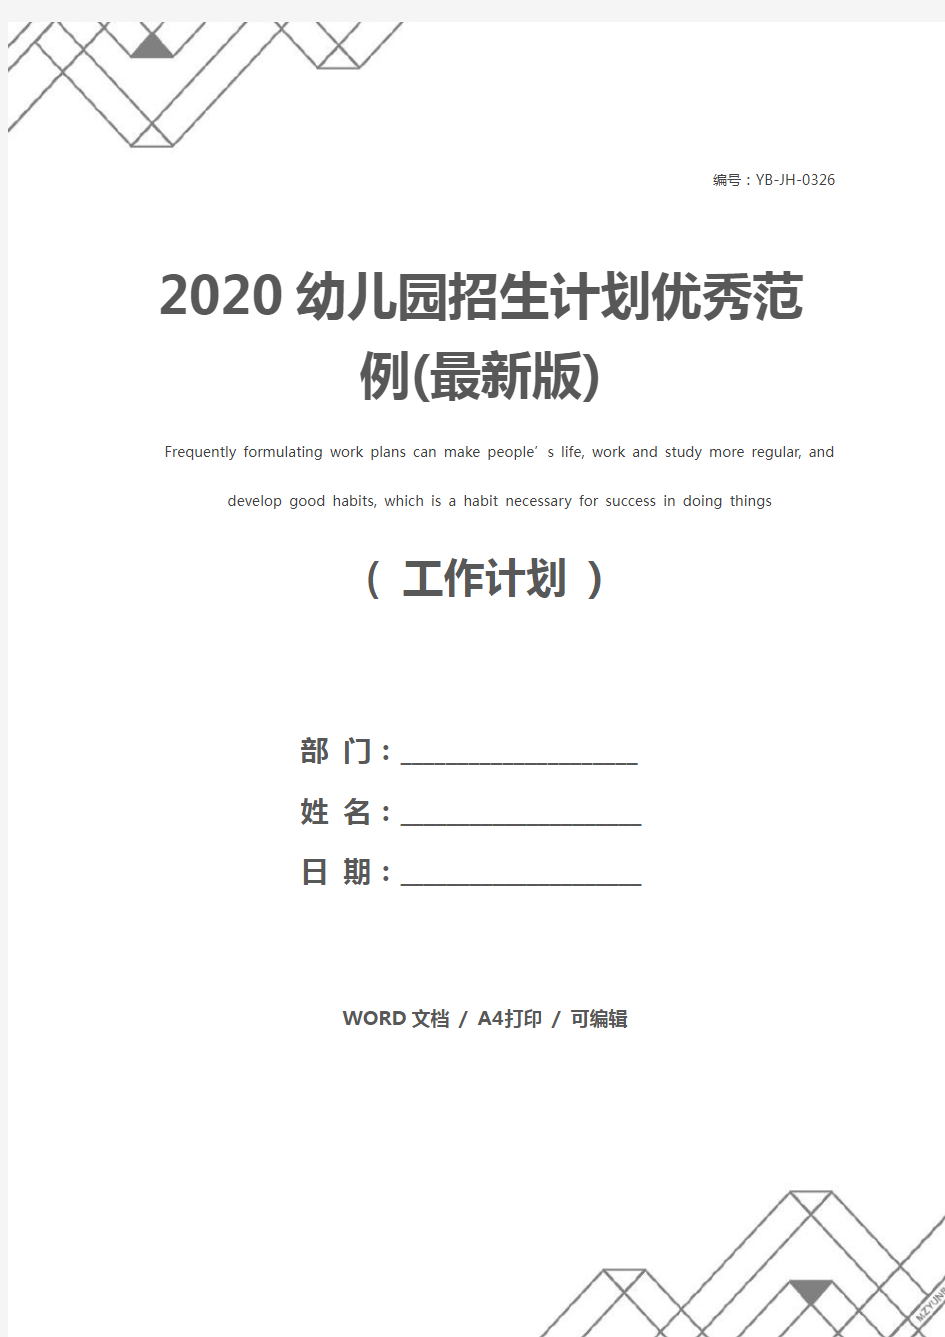 2020幼儿园招生计划优秀范例(最新版)